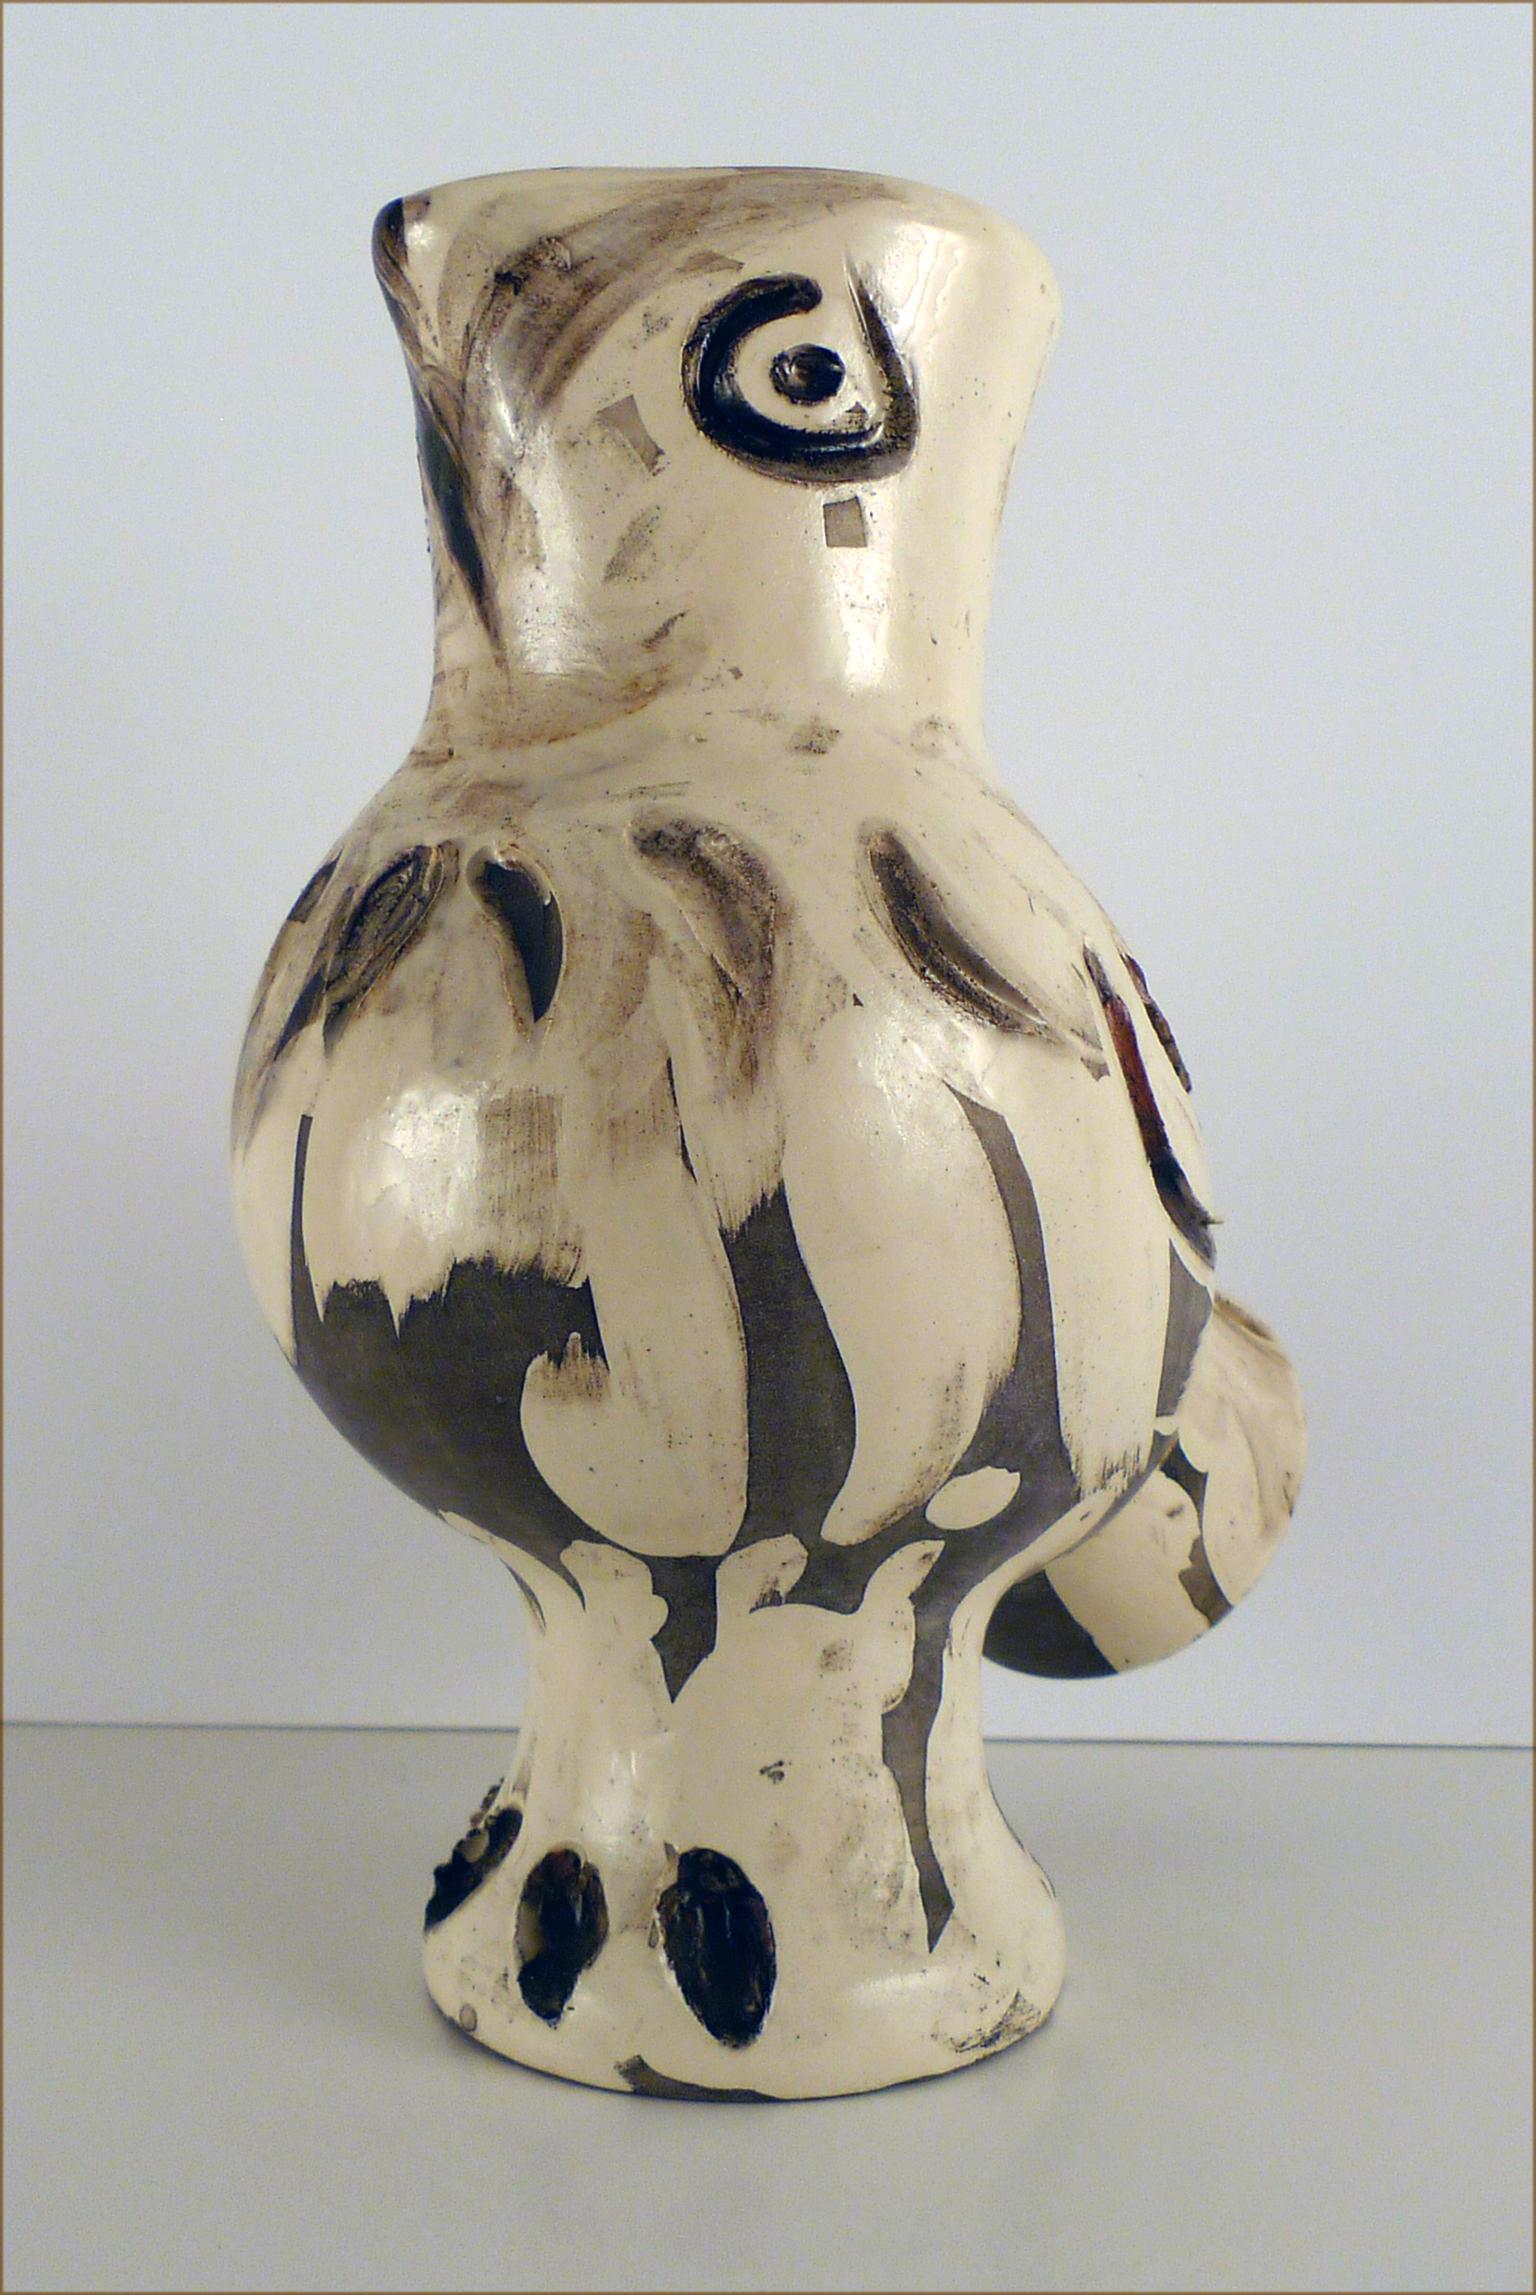 Die Chouette (A.R. 603), 1969. Keramik gestempelt 'Madoura Plein Feu / Edition Picasso' (Moderne), Art, von Pablo Picasso